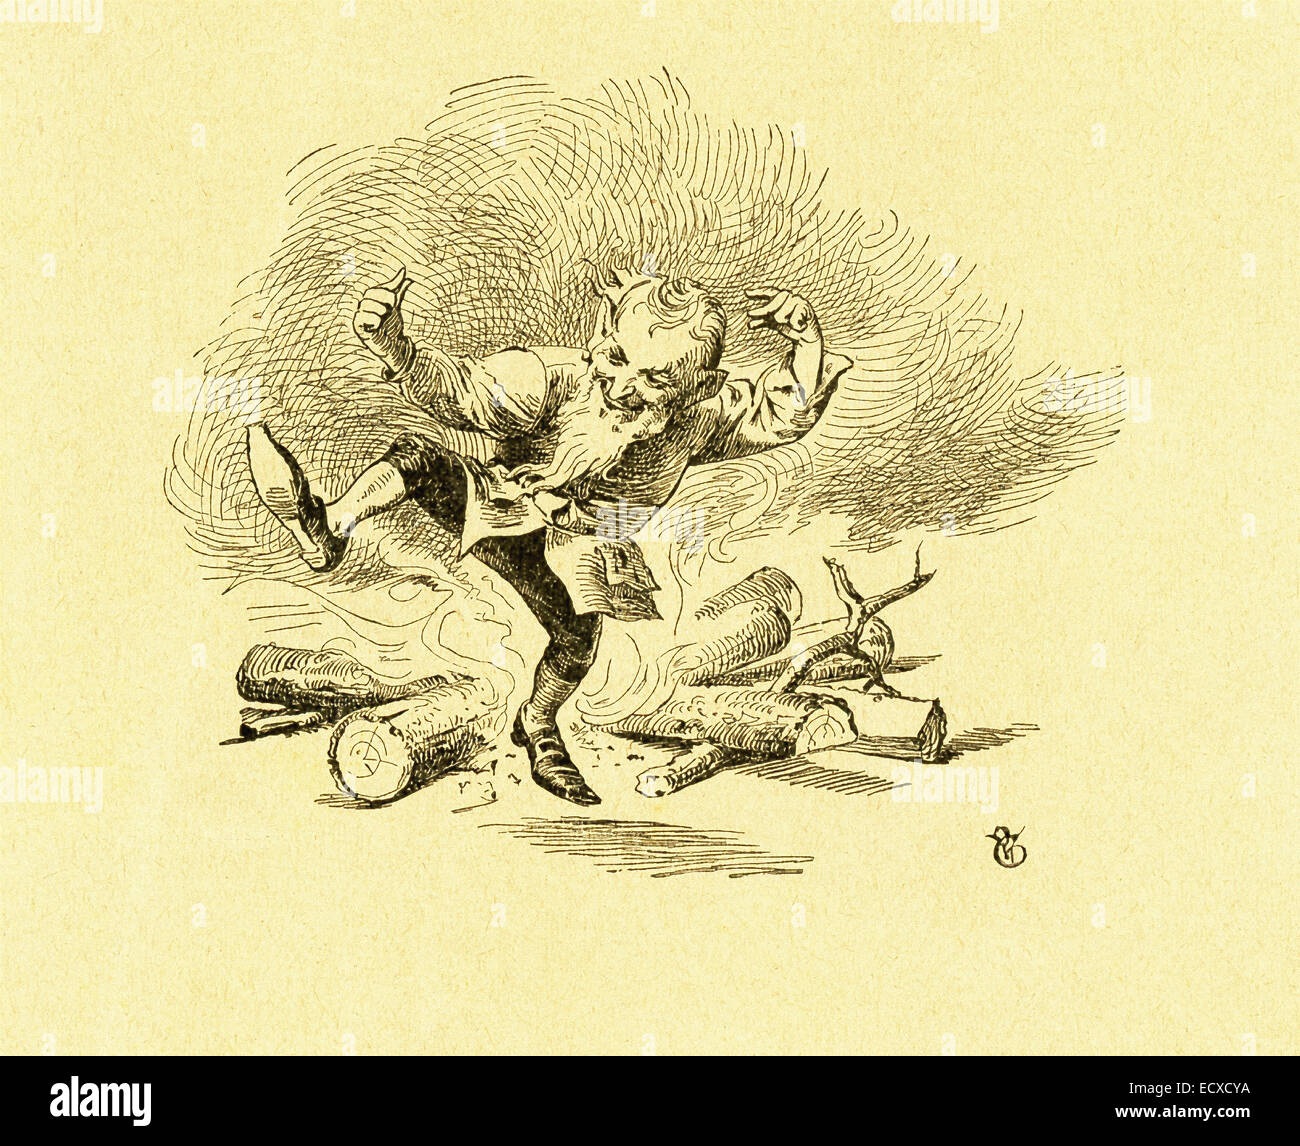 En 1812, los hermanos Grimm, Jacob y Wilhelm, publicado cuentos de niños y del hogar, una colección de cuentos de hadas alemán. Esta ilustración acompaña el cuento "Los duendes y el zapatero" y muestra uno de los pequeños elfos bailando alrededor de un fuego por la noche cuando él y sus compañeros vienen y zapatos de moda para el zapatero que es necesitado pero siempre dispuesto a ayudar a la gente. Esta imagen es de Grimms Eventyr (Cuentos de hadas de Grimm) por Carl Ewald, publicado en 1922. El frontispicio tiene ilustraciones por Philip Grot Johann y R. Leinweber. Foto de stock